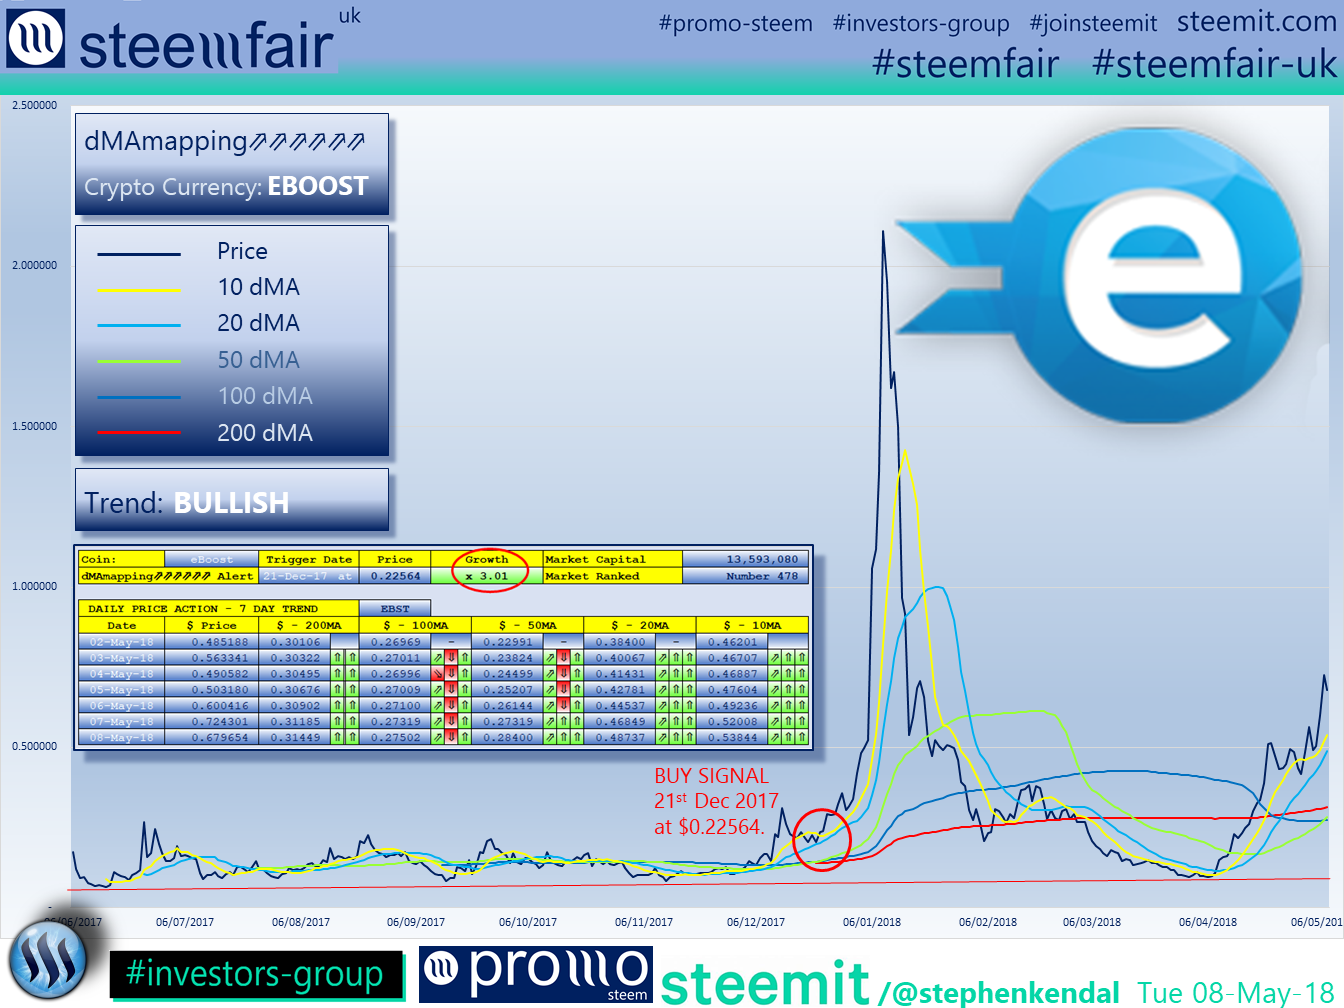 SteemFair SteemFair-uk Promo-Steem Investors-Group eBoost